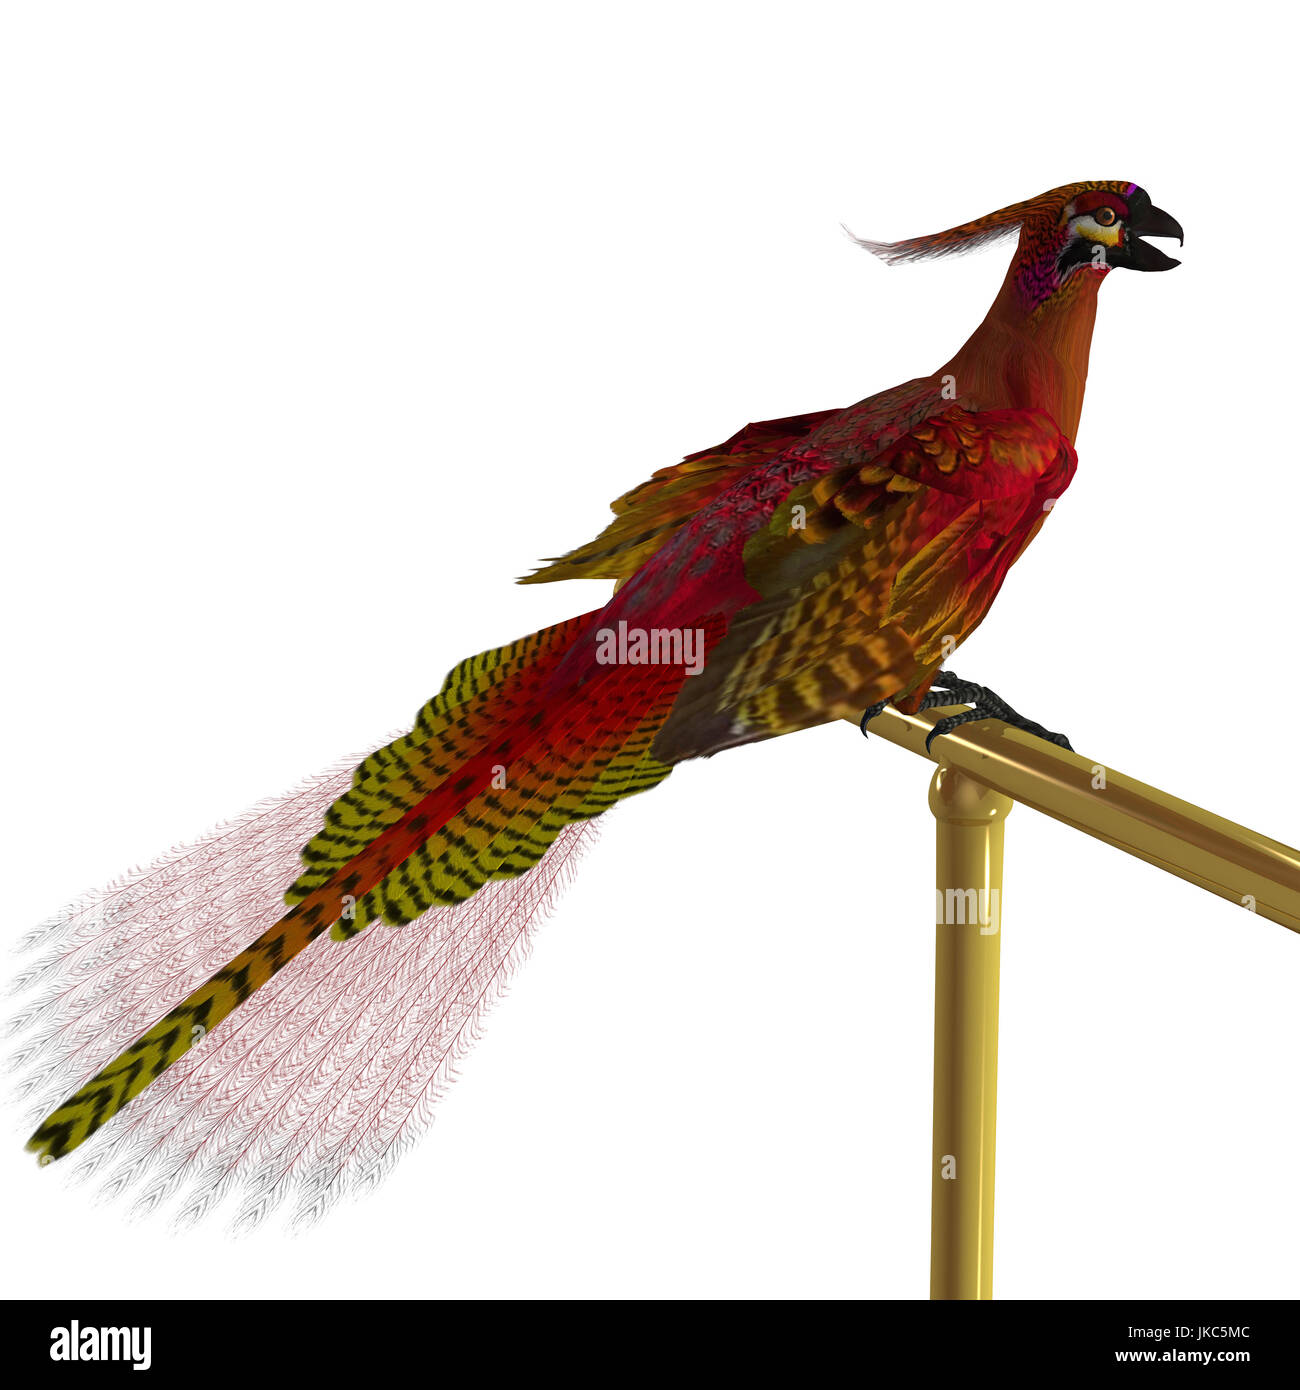 Phoenix oiseau sur perchoir - Le Phoenix est un oiseau de la mythologie grecque, c'est une longue durée de vie et renaît ou régénérée, encore et encore. Banque D'Images